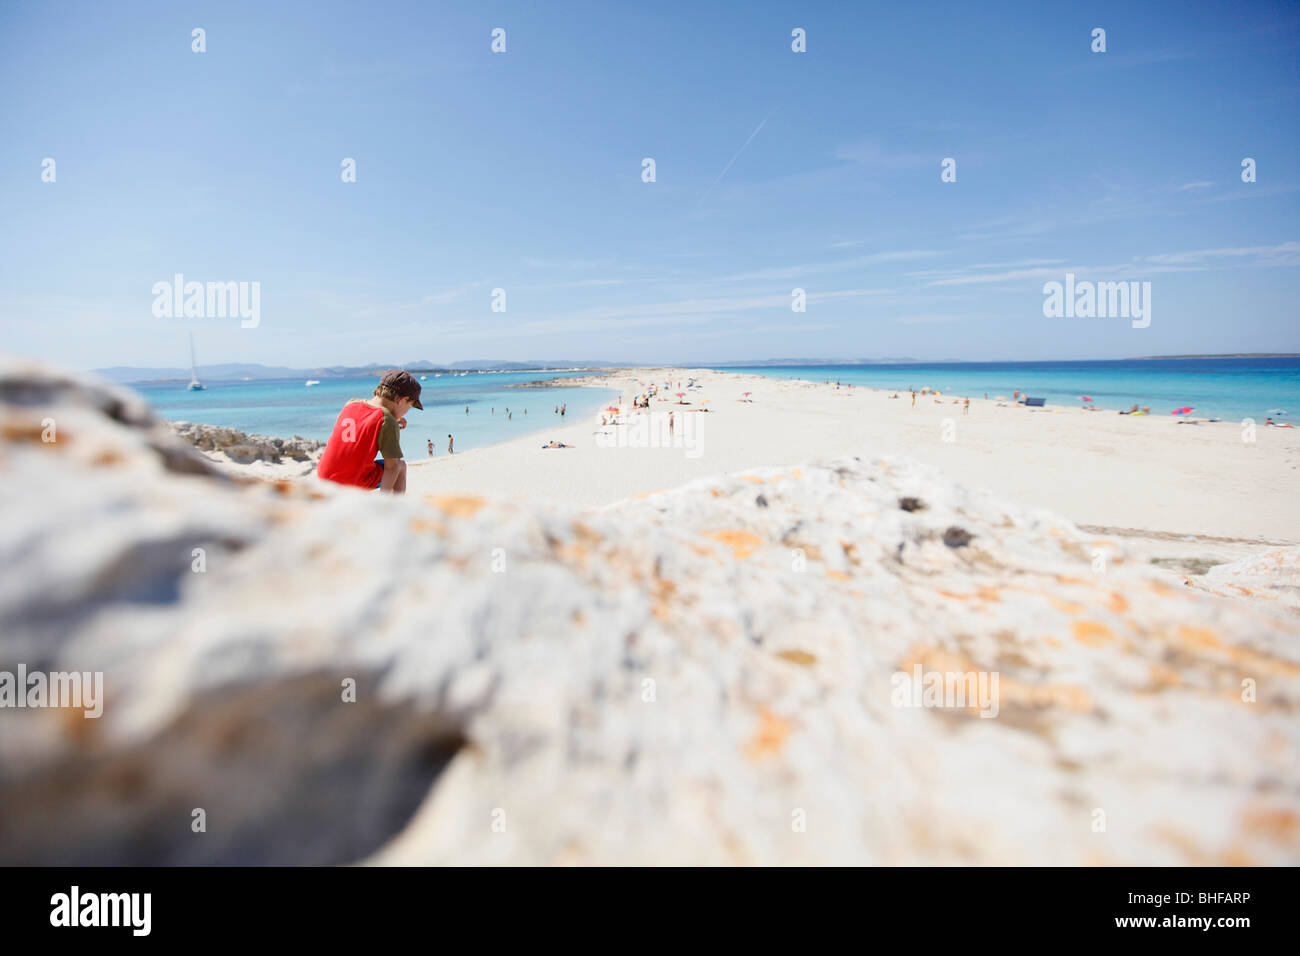 Garçon sur la plage, les Illetes und plage de Llevant, Majorque, Îles Baléares, Espagne Banque D'Images